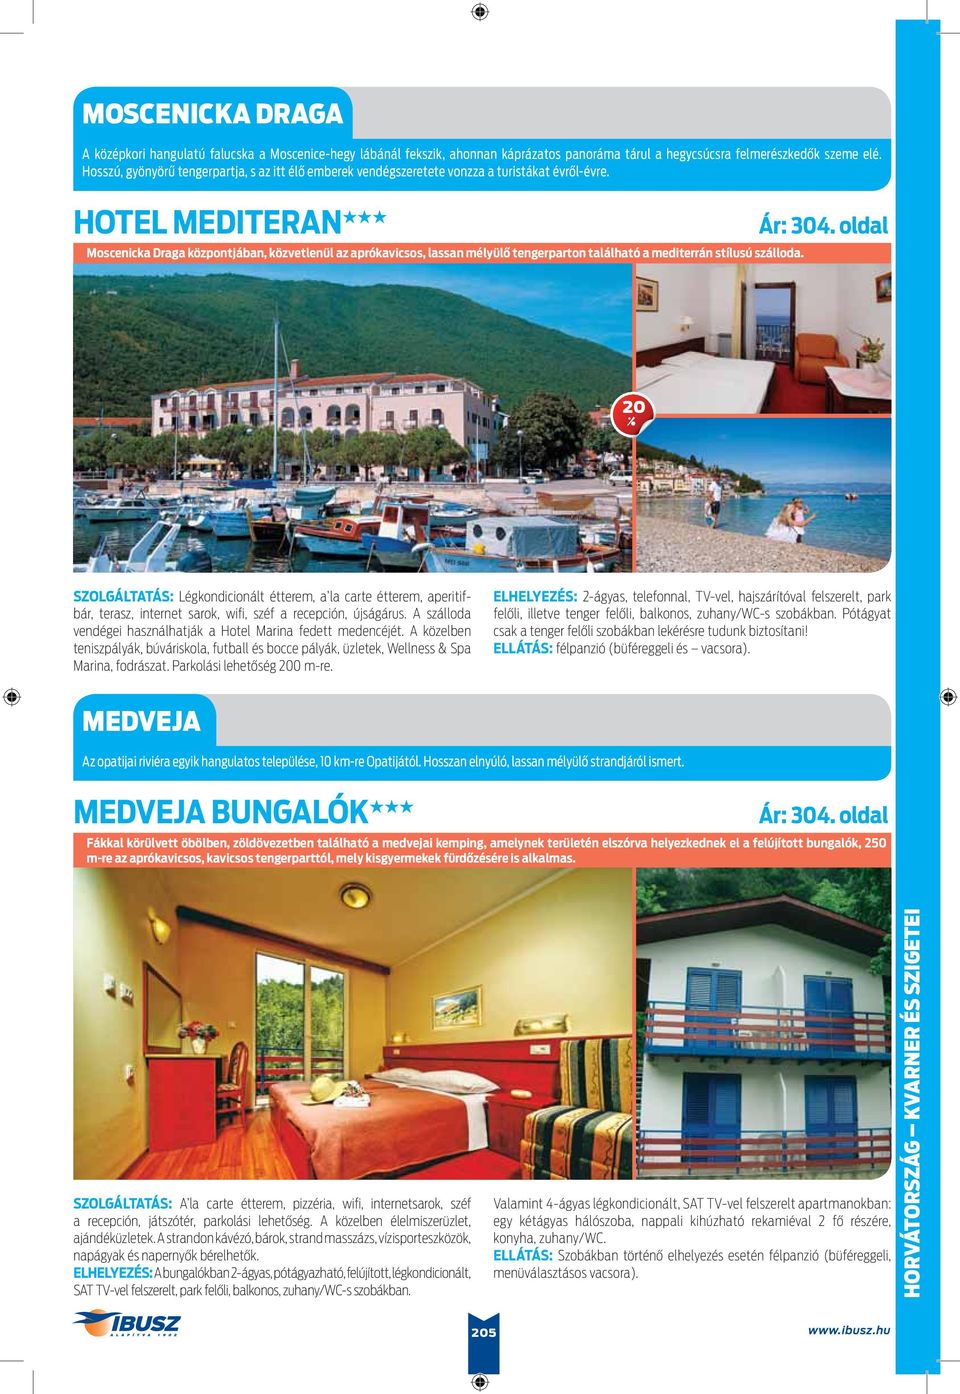 HOTEL MEDITERAN Moscenicka Draga központjában, közvetlenül az aprókavicsos, lassan mélyülő tengerparton található a mediterrán stílusú szálloda.